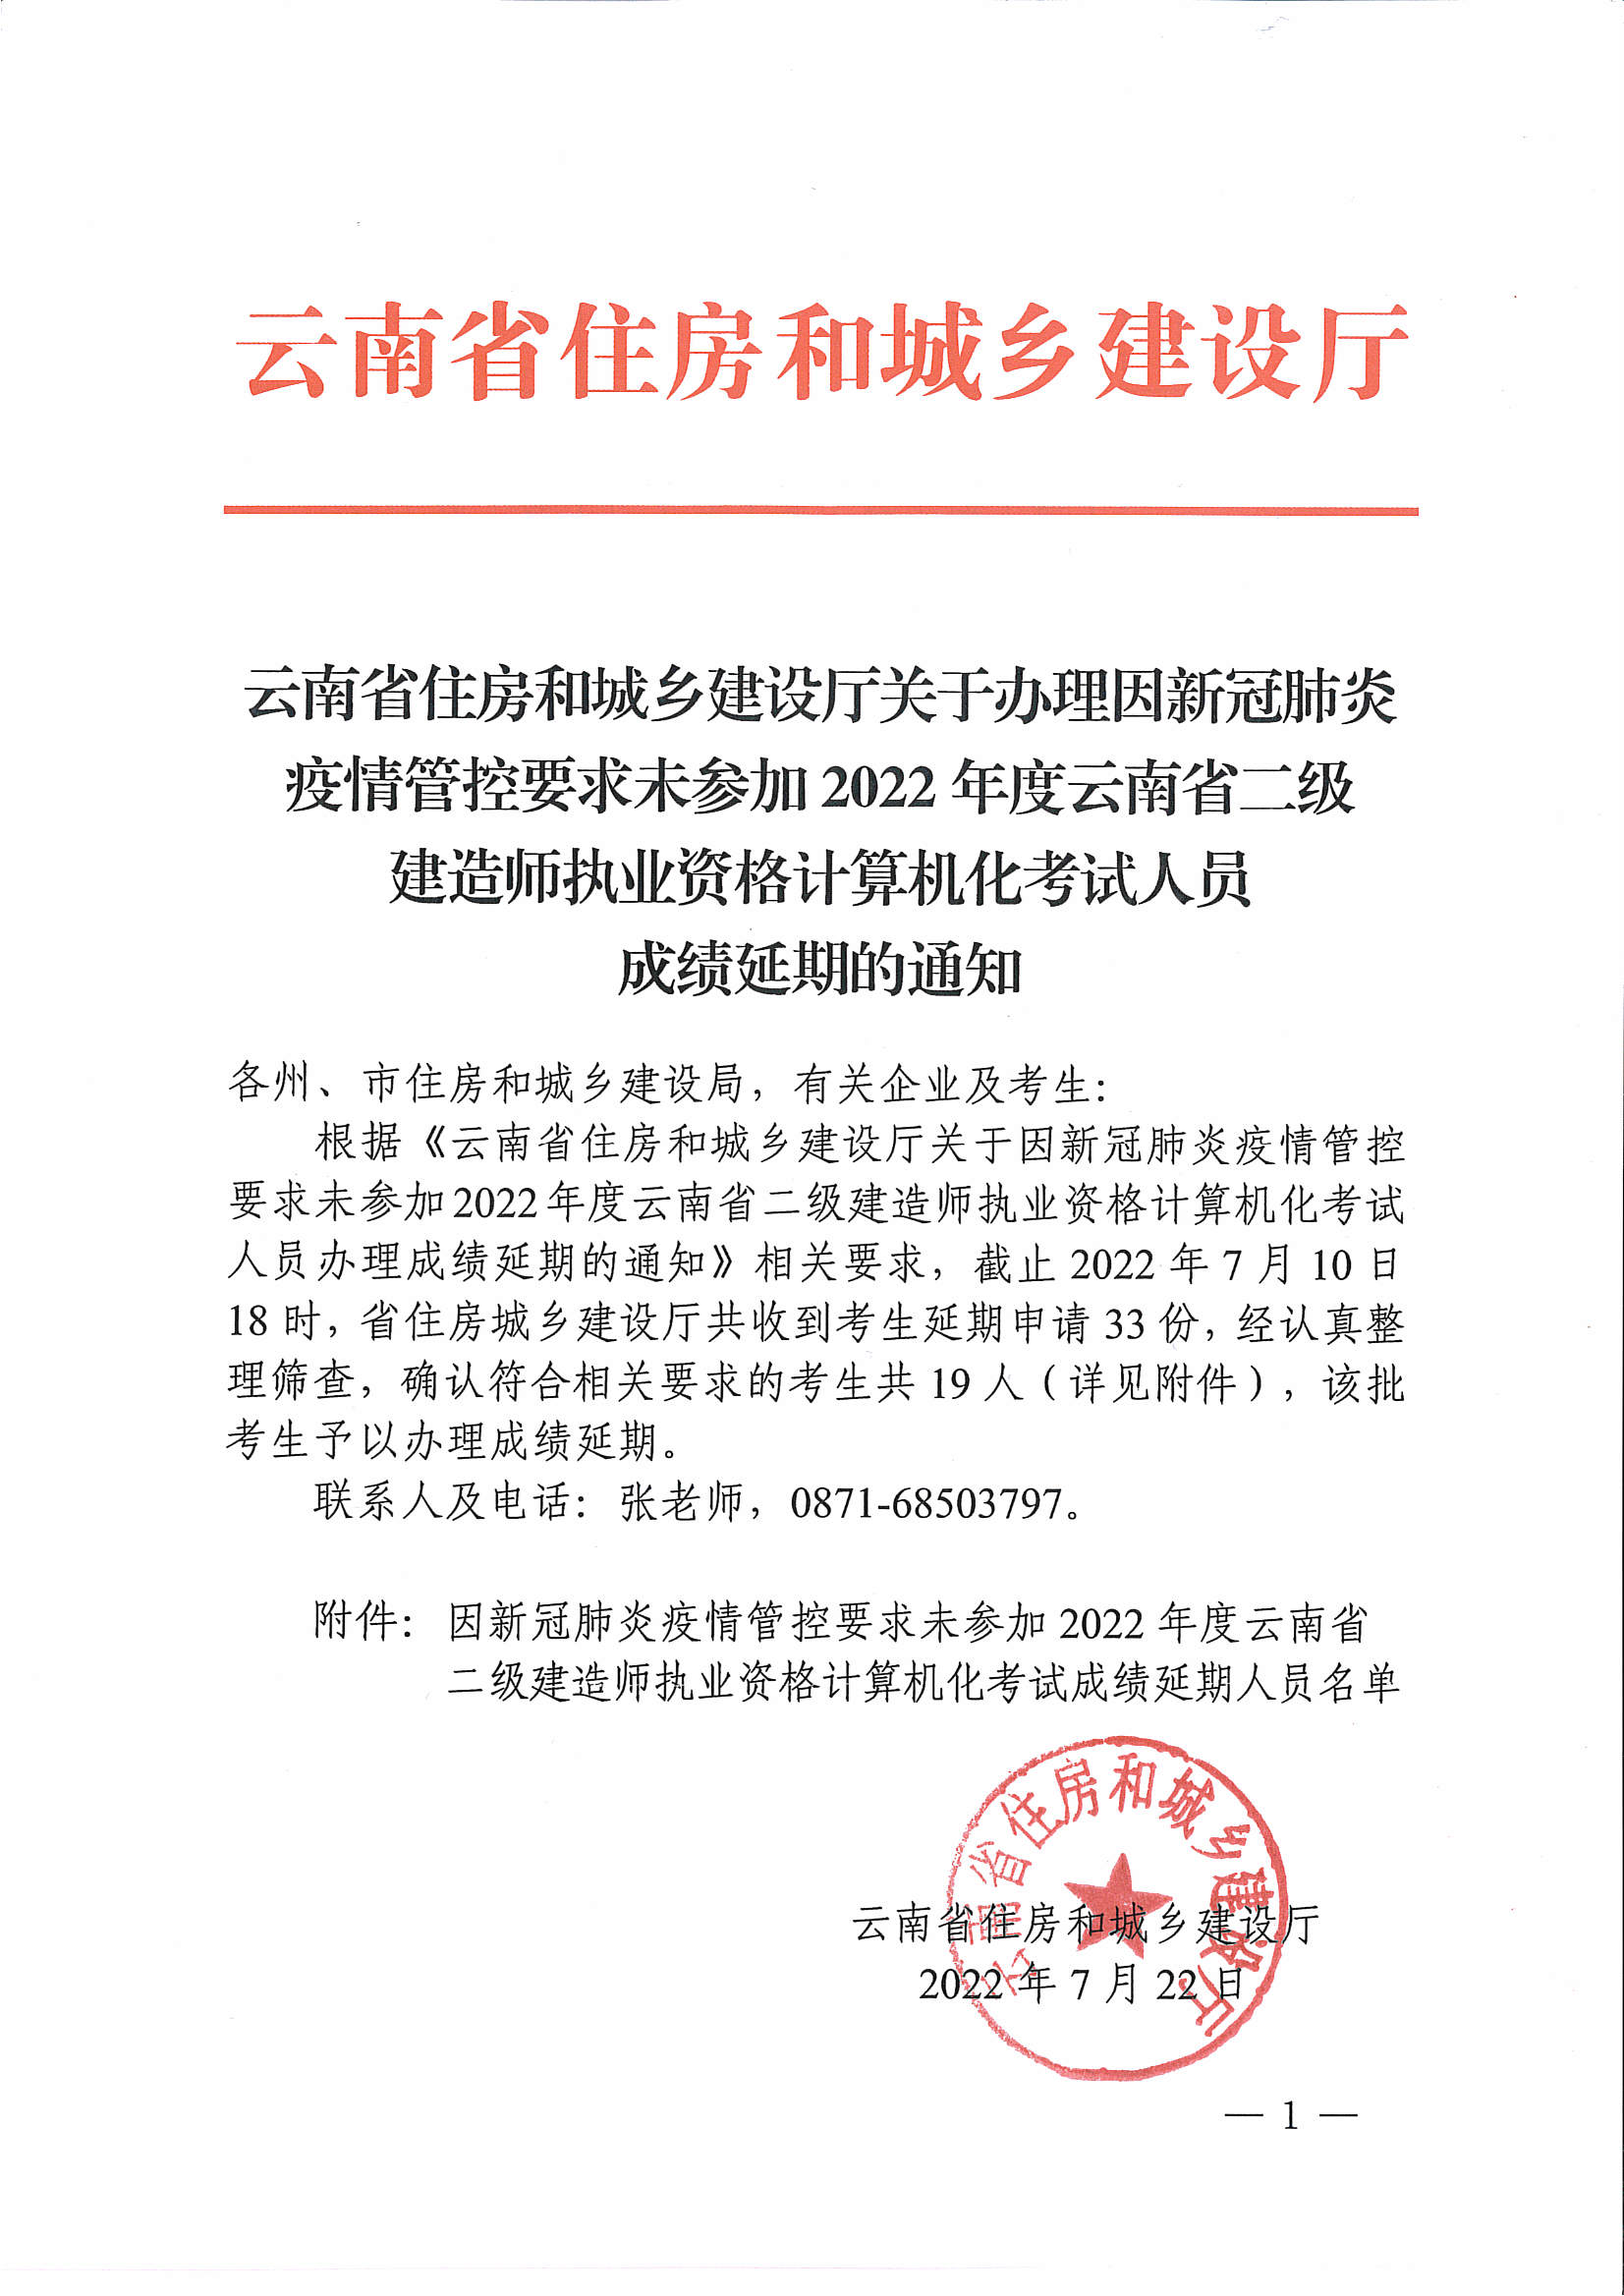 关于办理因新冠肺炎疫情管控要求未参加2022年度云南省二级建造师执业资格计算计划考试人员成绩延期的通知_页面_1.png